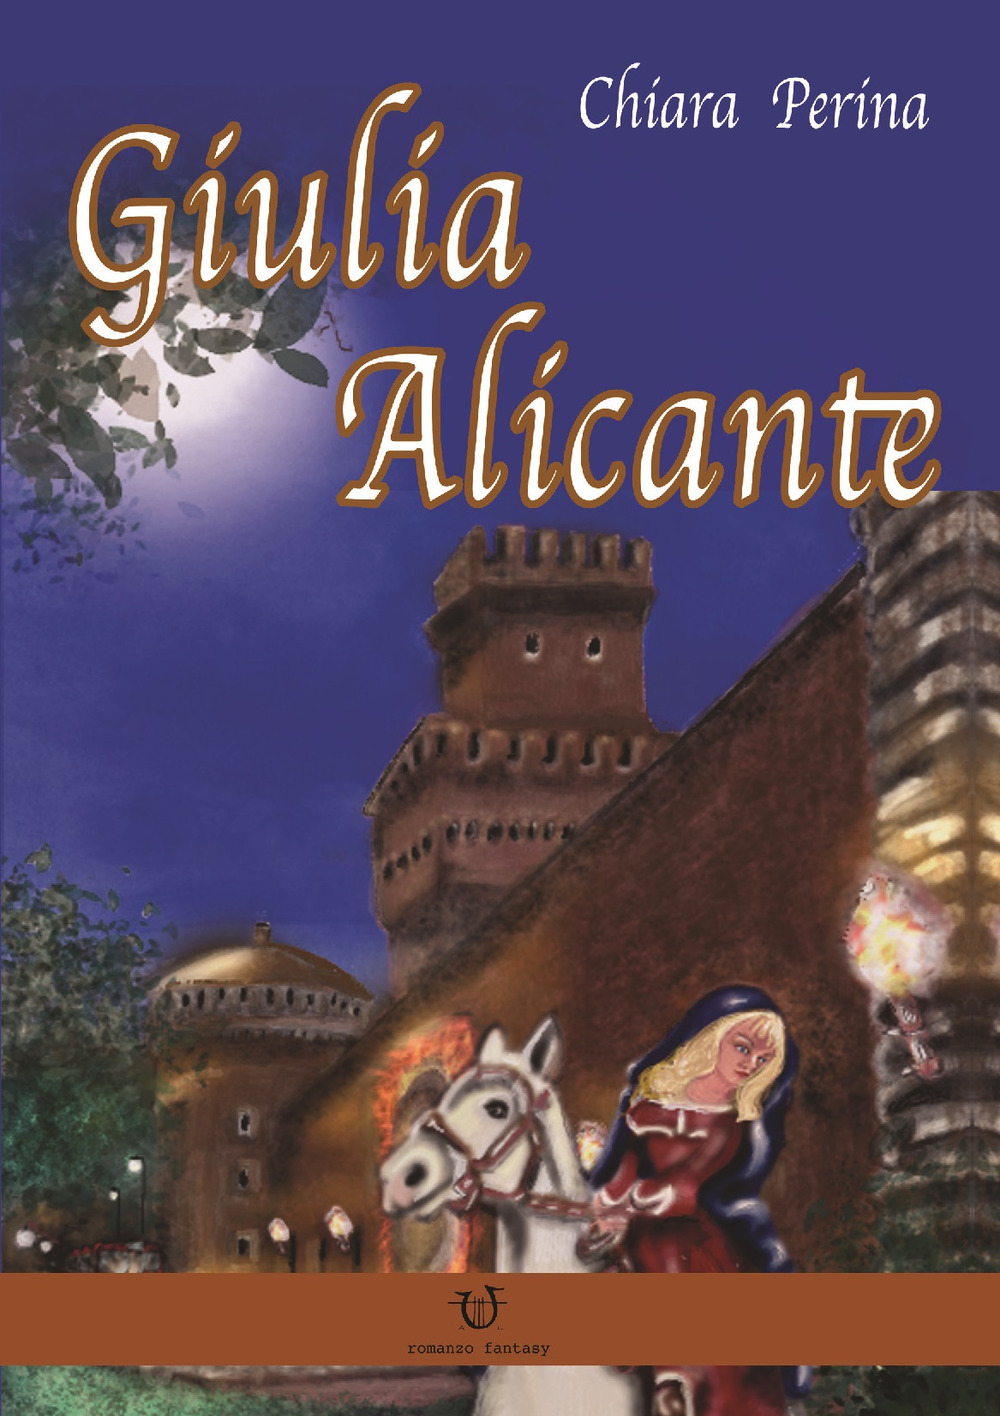 Giulia Alicante